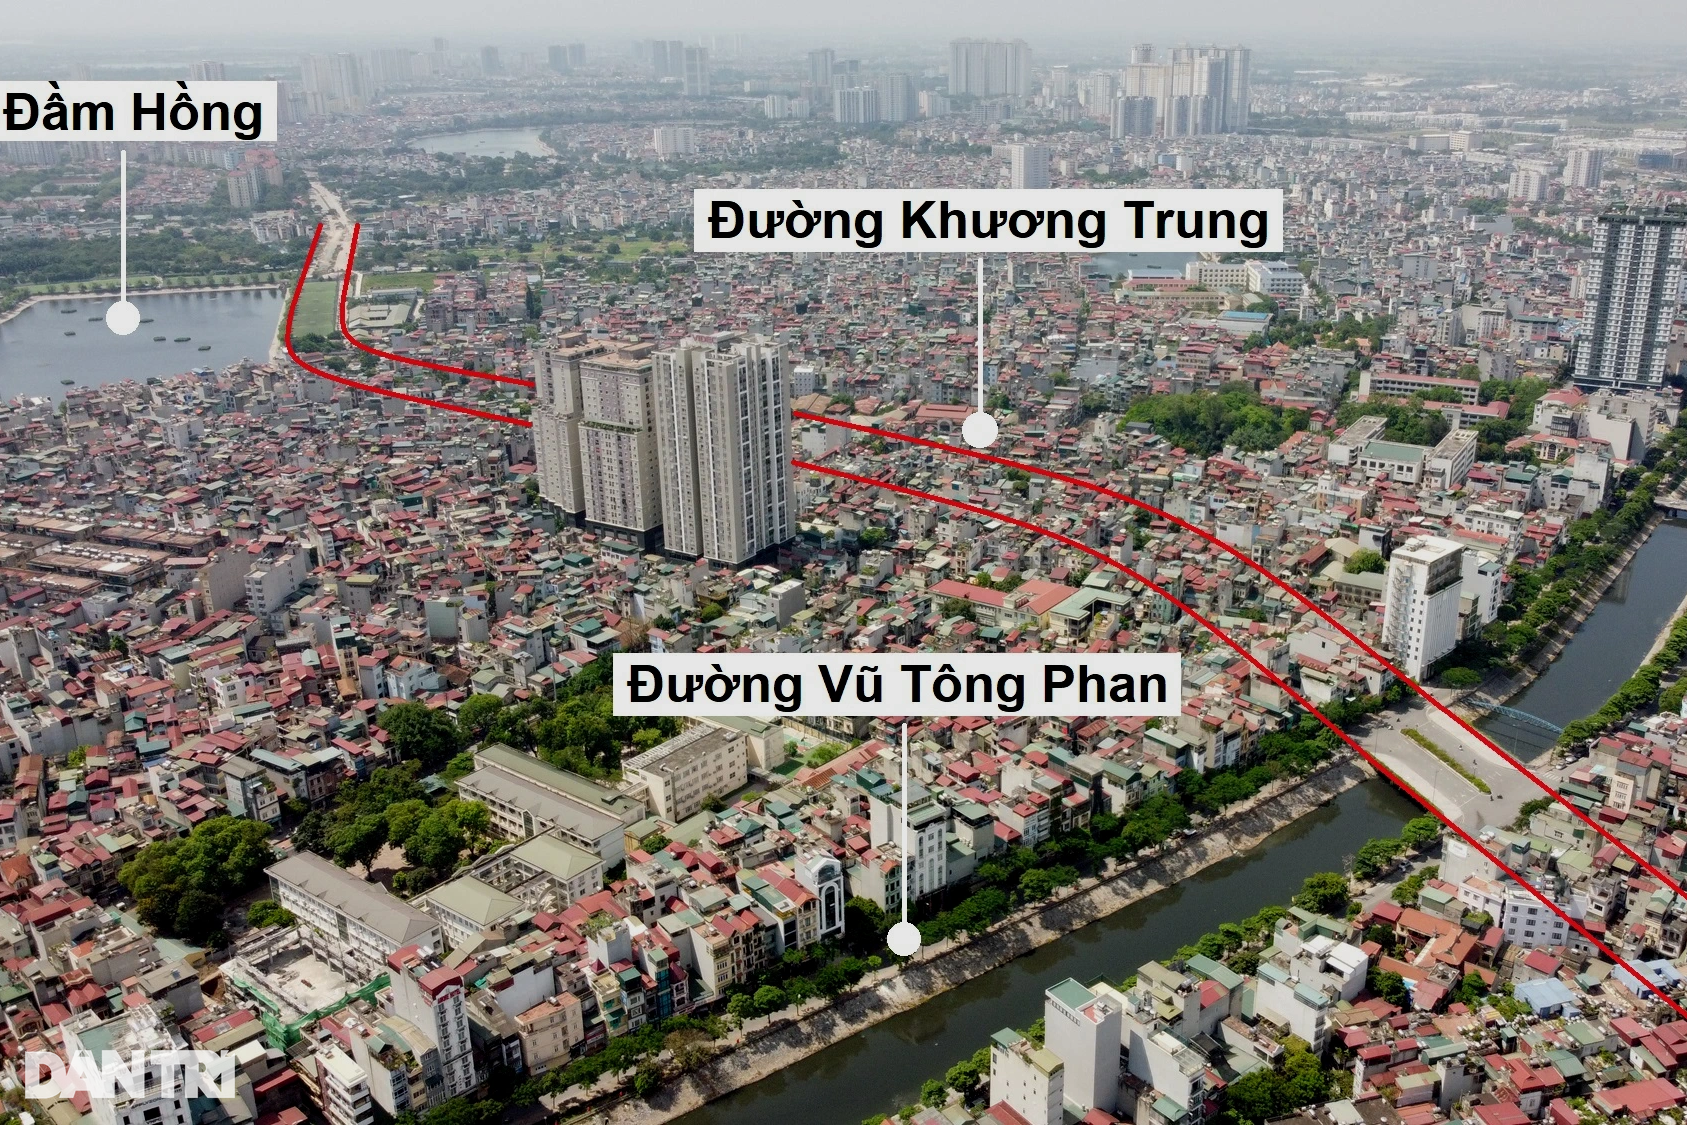 Quy hoạch đường vành đai 2.5 Hà Nội đã mở rộng tầm nhìn phát triển cho khu vực này cũng như đất nước. Điều này thể hiện sự quan tâm tới sự phát triển và tăng trưởng kinh tế của đất nước Việt Nam.